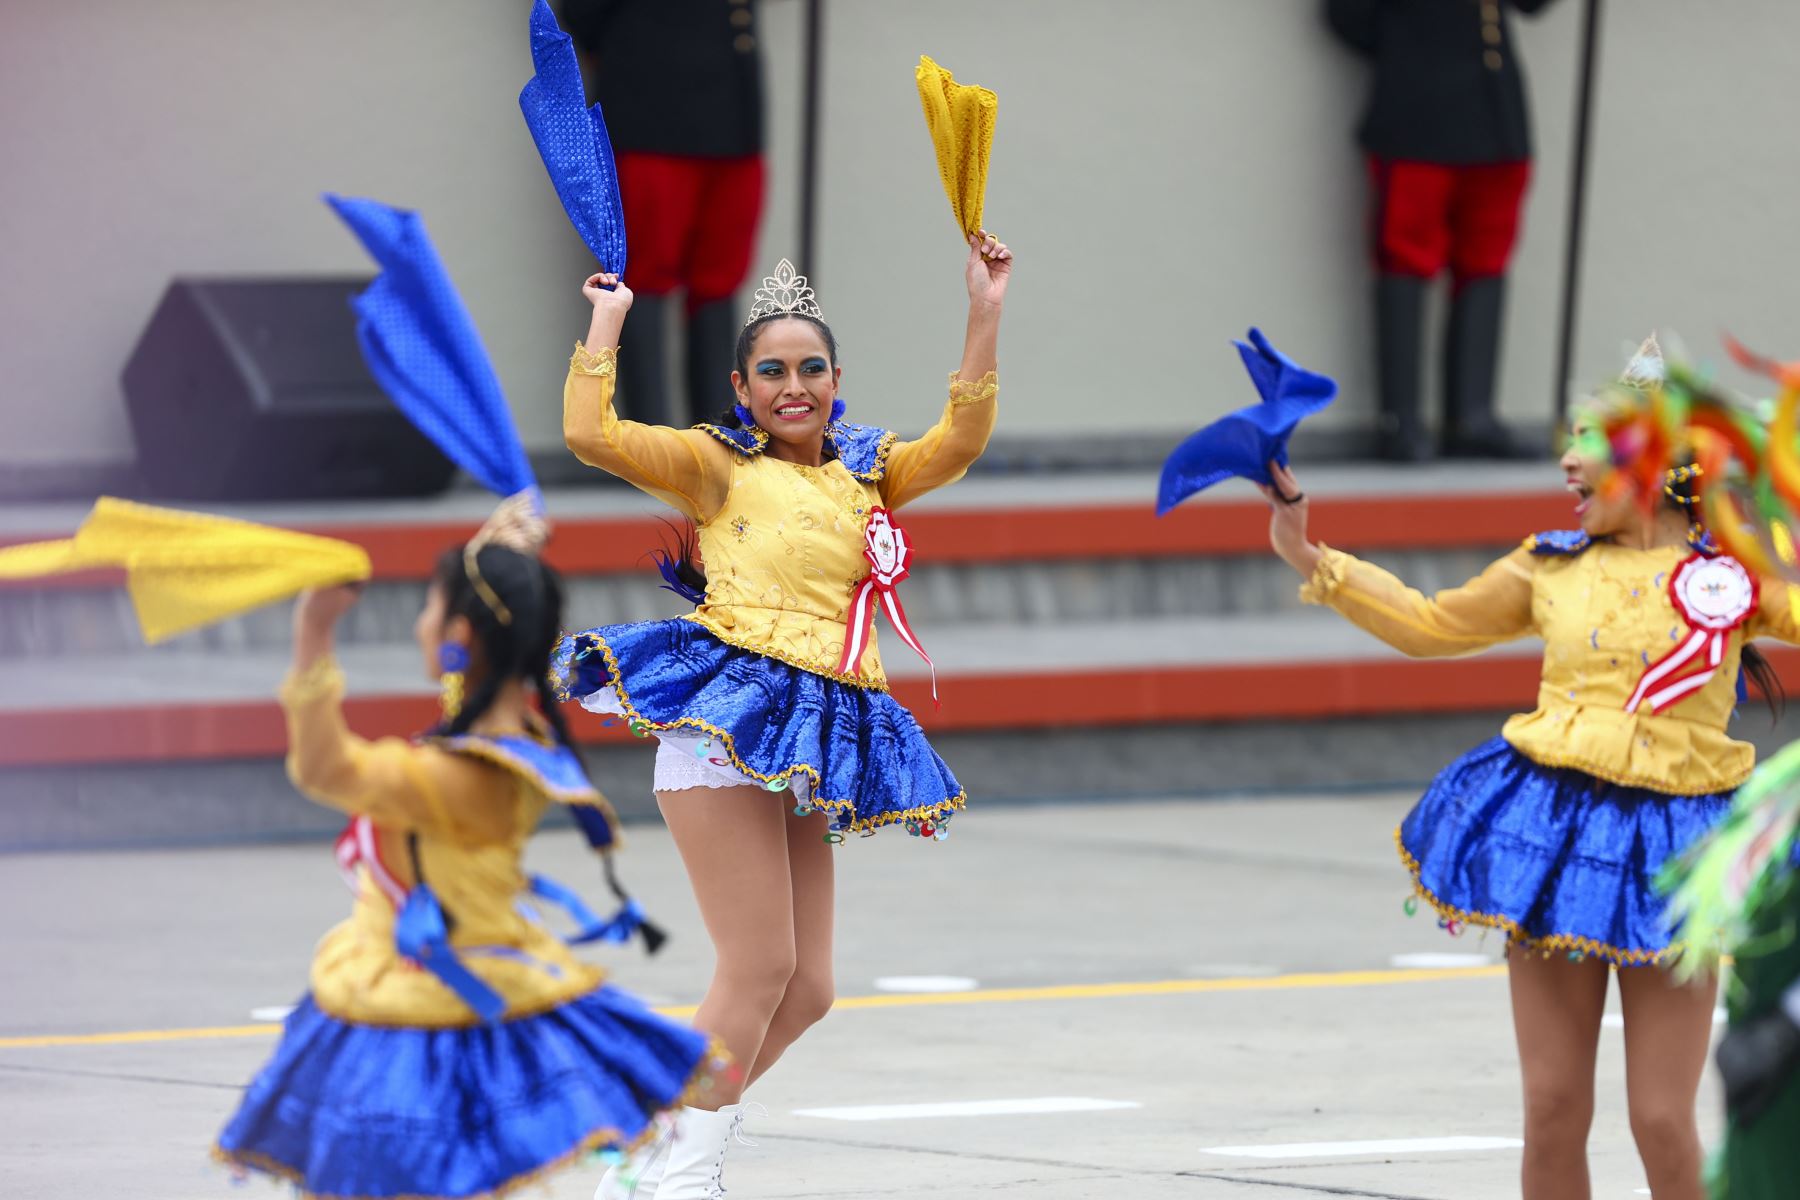 La marinera norteña y la diablada puneña se robaron el show los primeros minutos de la Gran Parada y Desfile Militar 2022. Foto: ANDINA/Andrés Valle